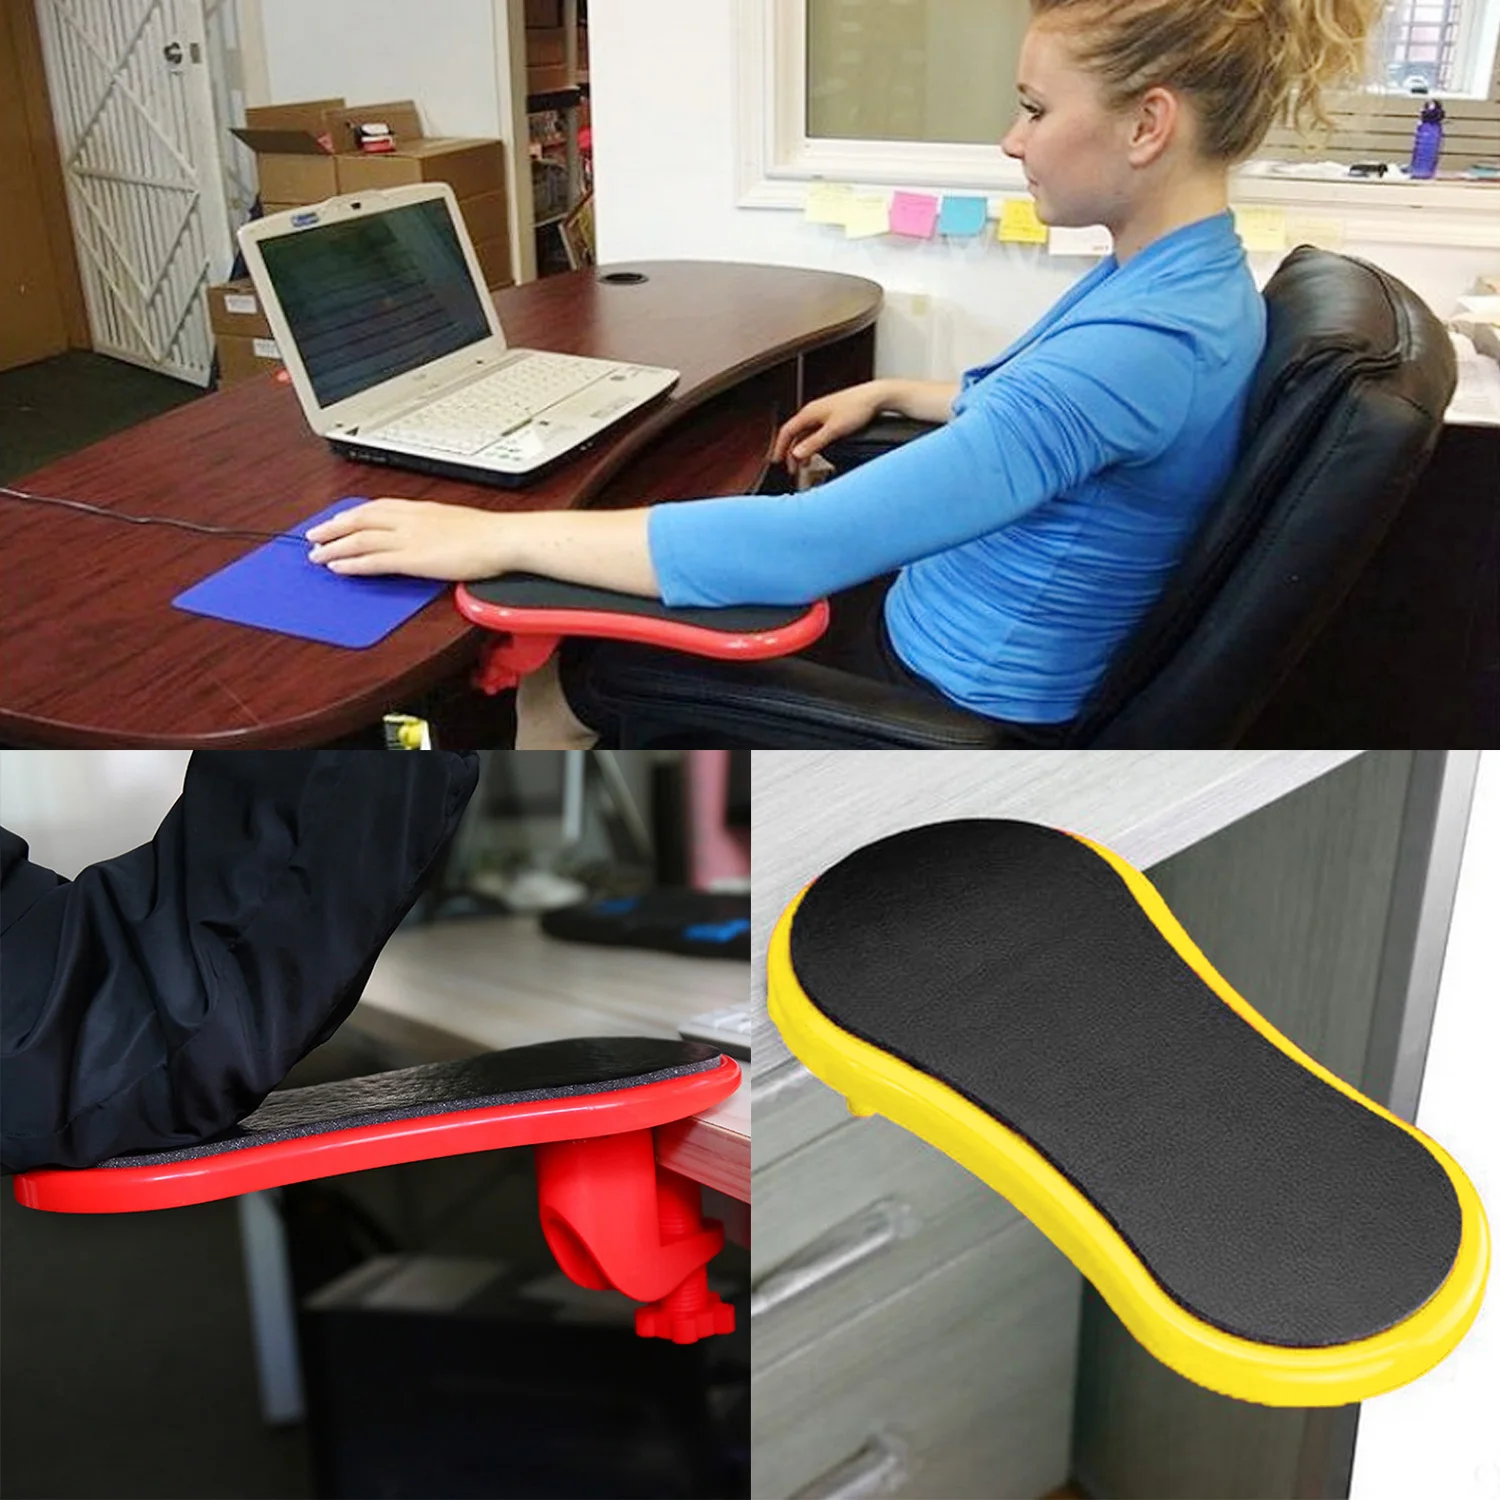 Прикрепляемый Подлокотник коврик стол компьютерный стол поддержка рук коврик для мыши подлокотники удлинитель для стула рука плечо защита коврик для мыши